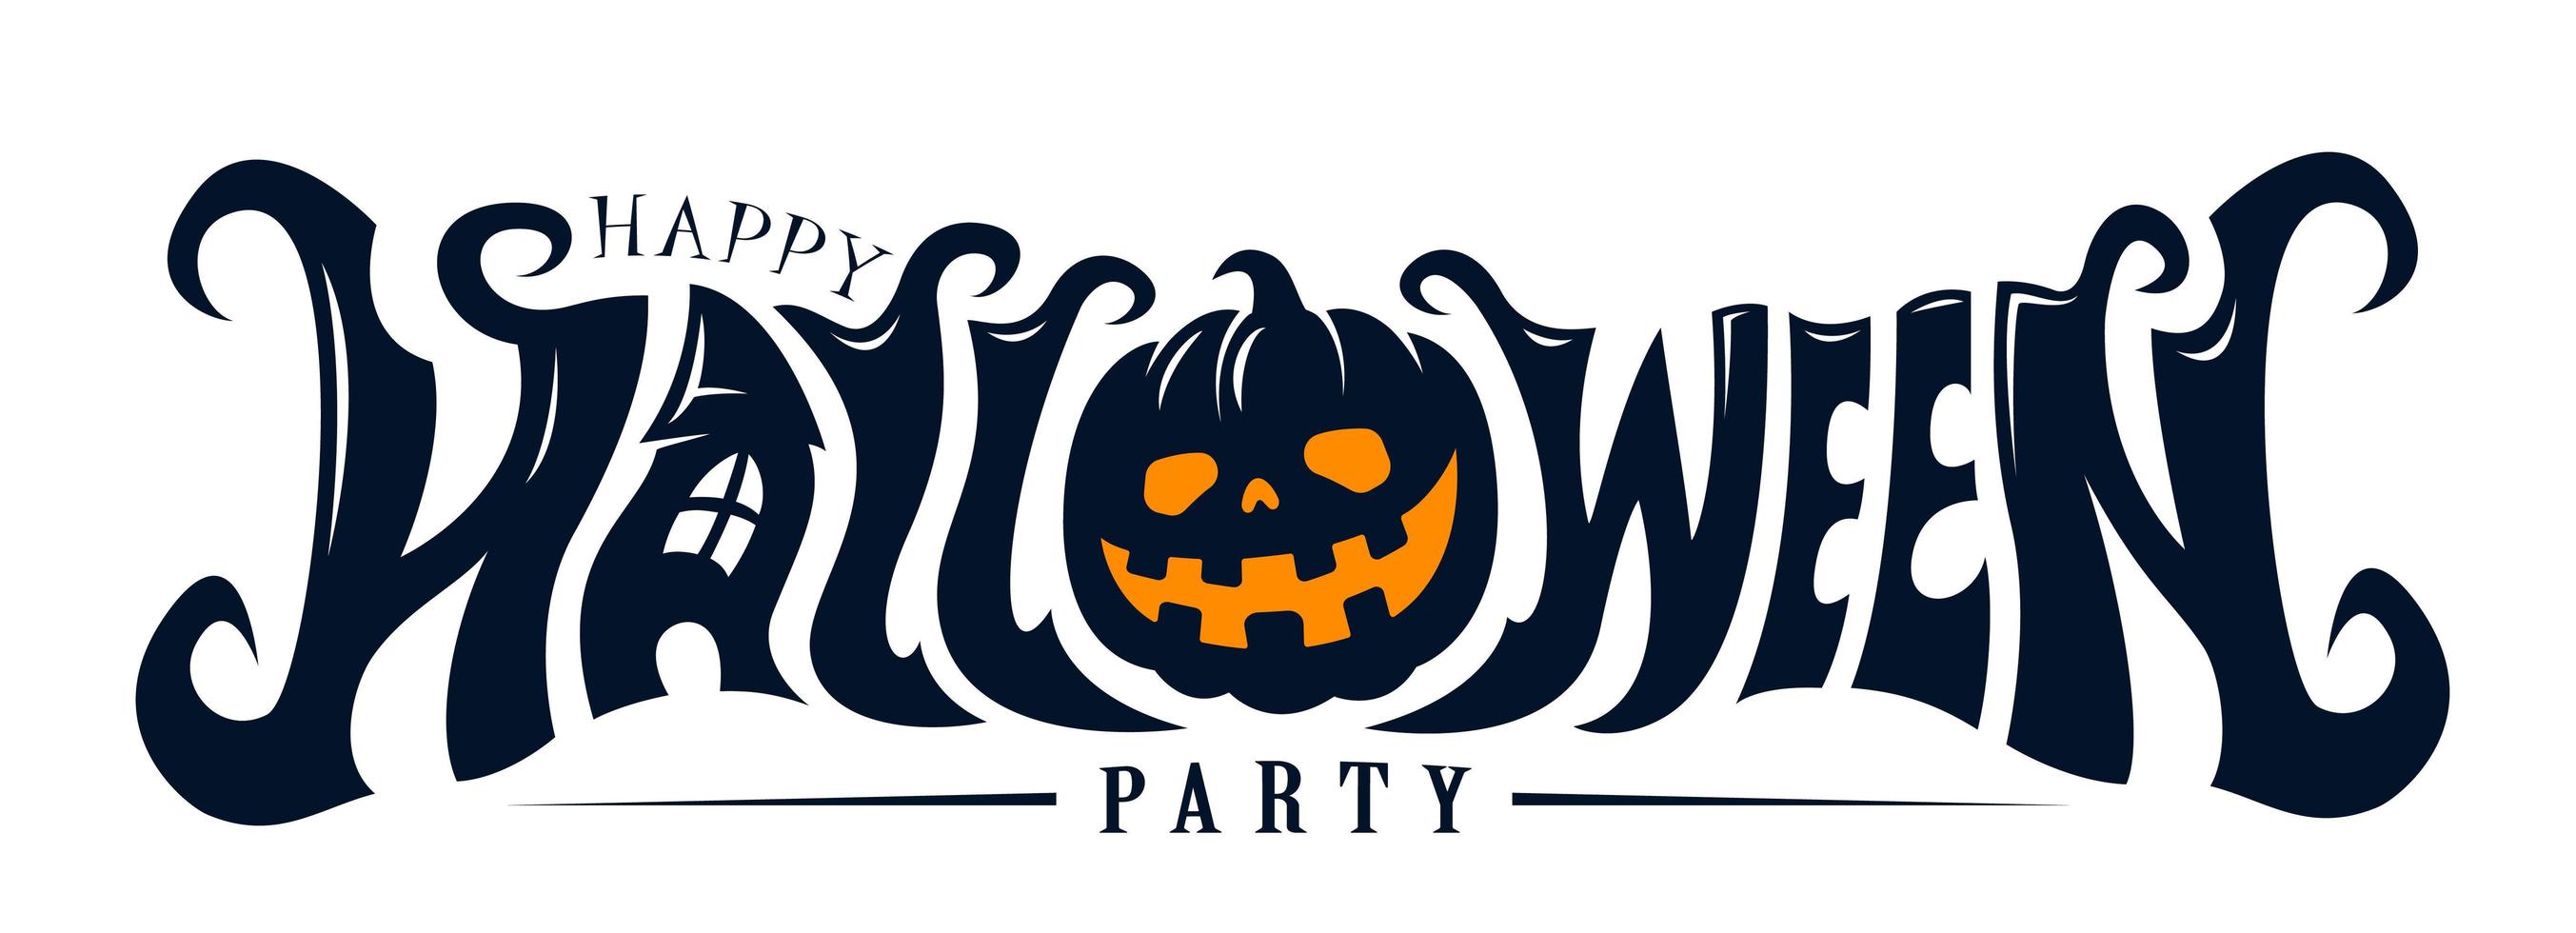 Happy Halloween Party Text design vector